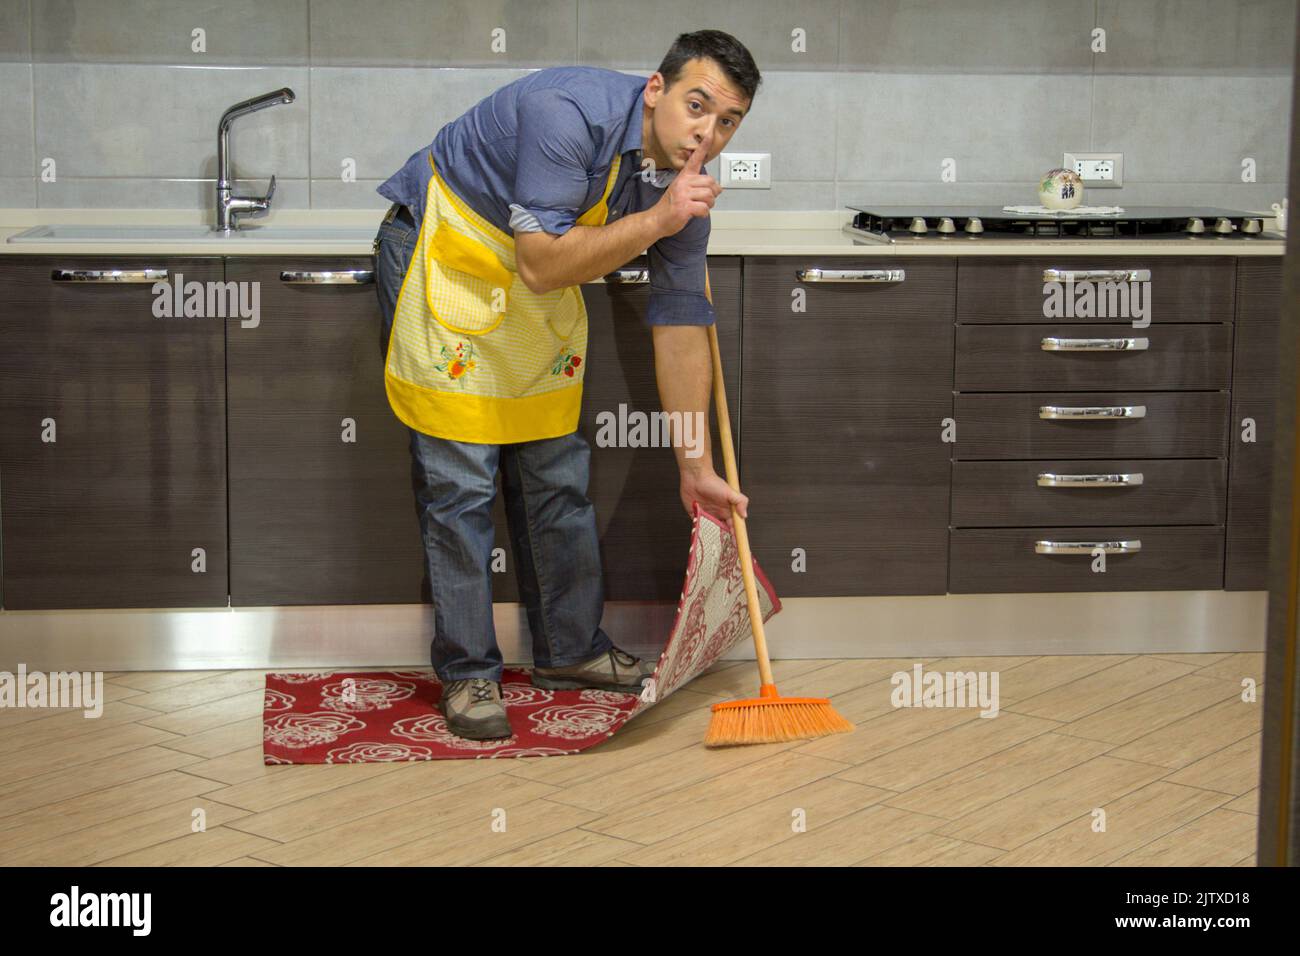 Junge, der Hausarbeit leistet, während er eine Geste der Stille macht und Schmutz unter dem Teppich versteckt Stockfoto